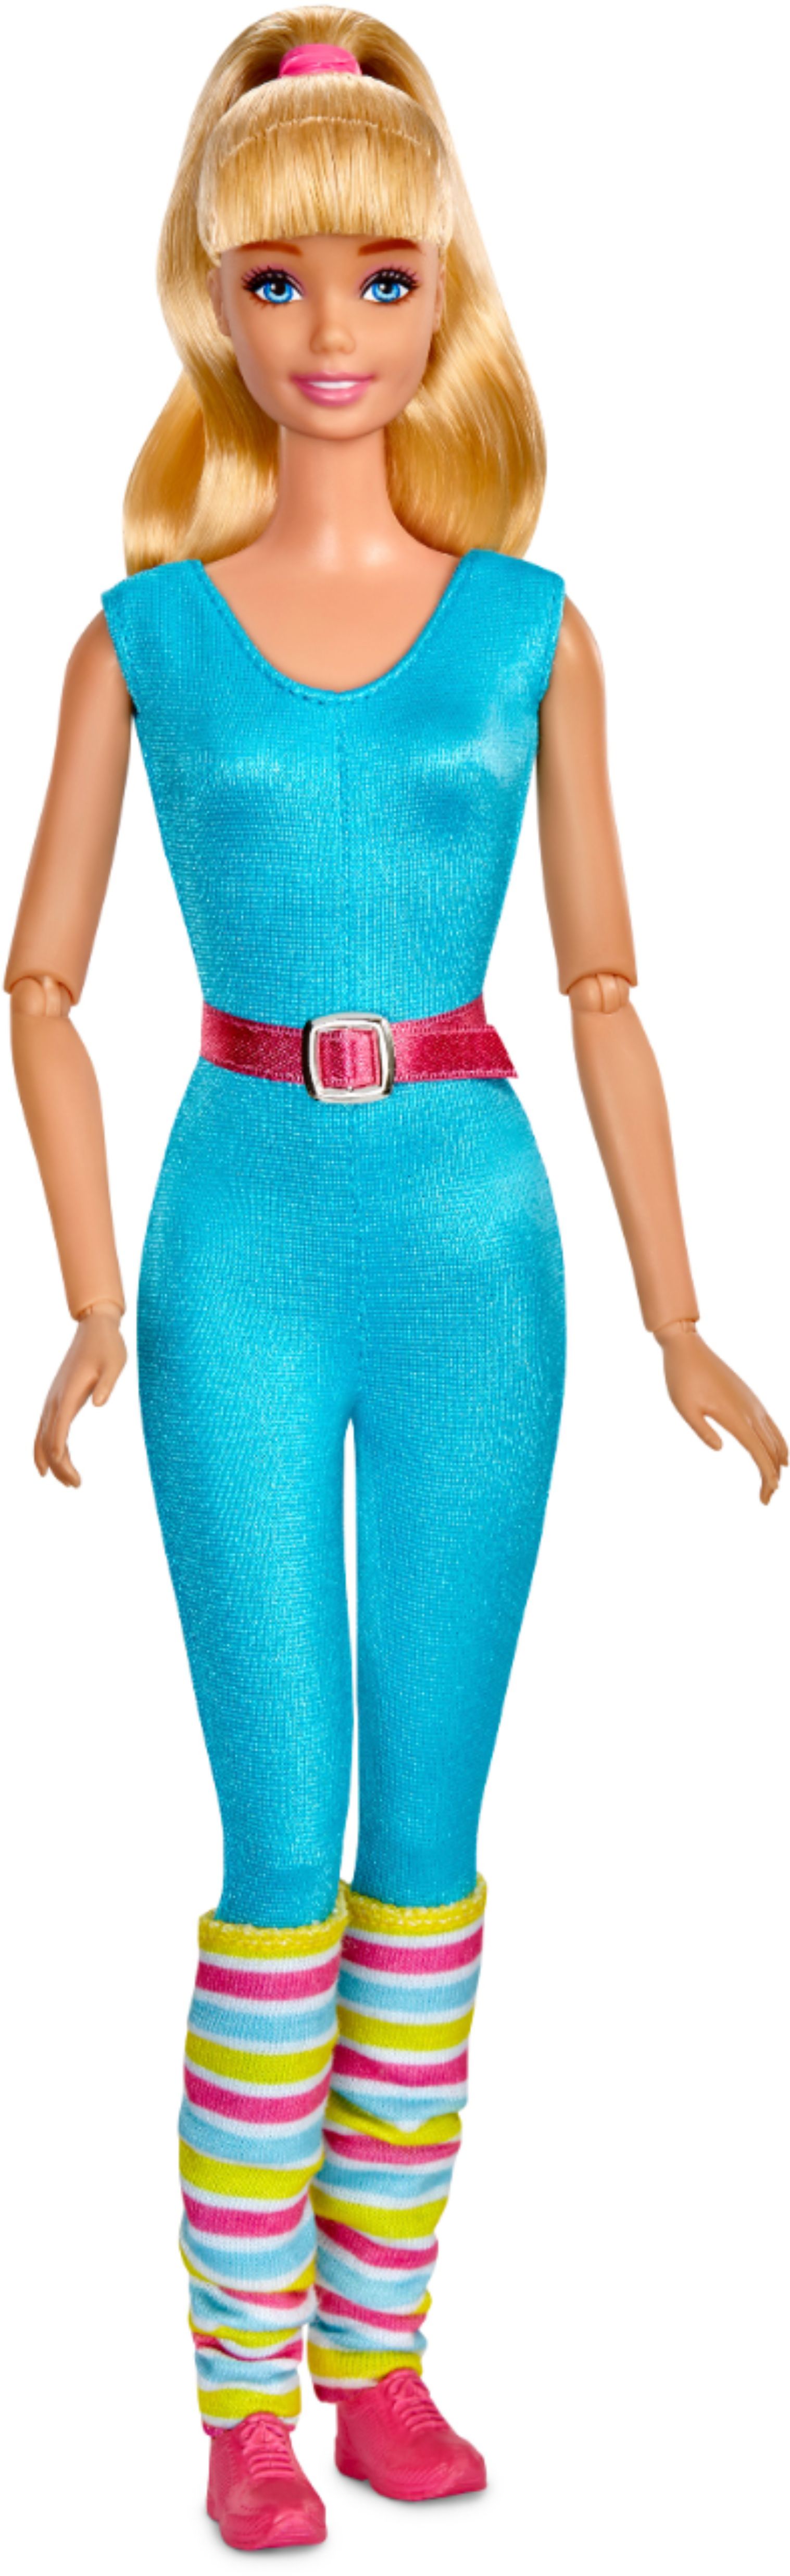 Toy Story 4 - Barbie 11.5